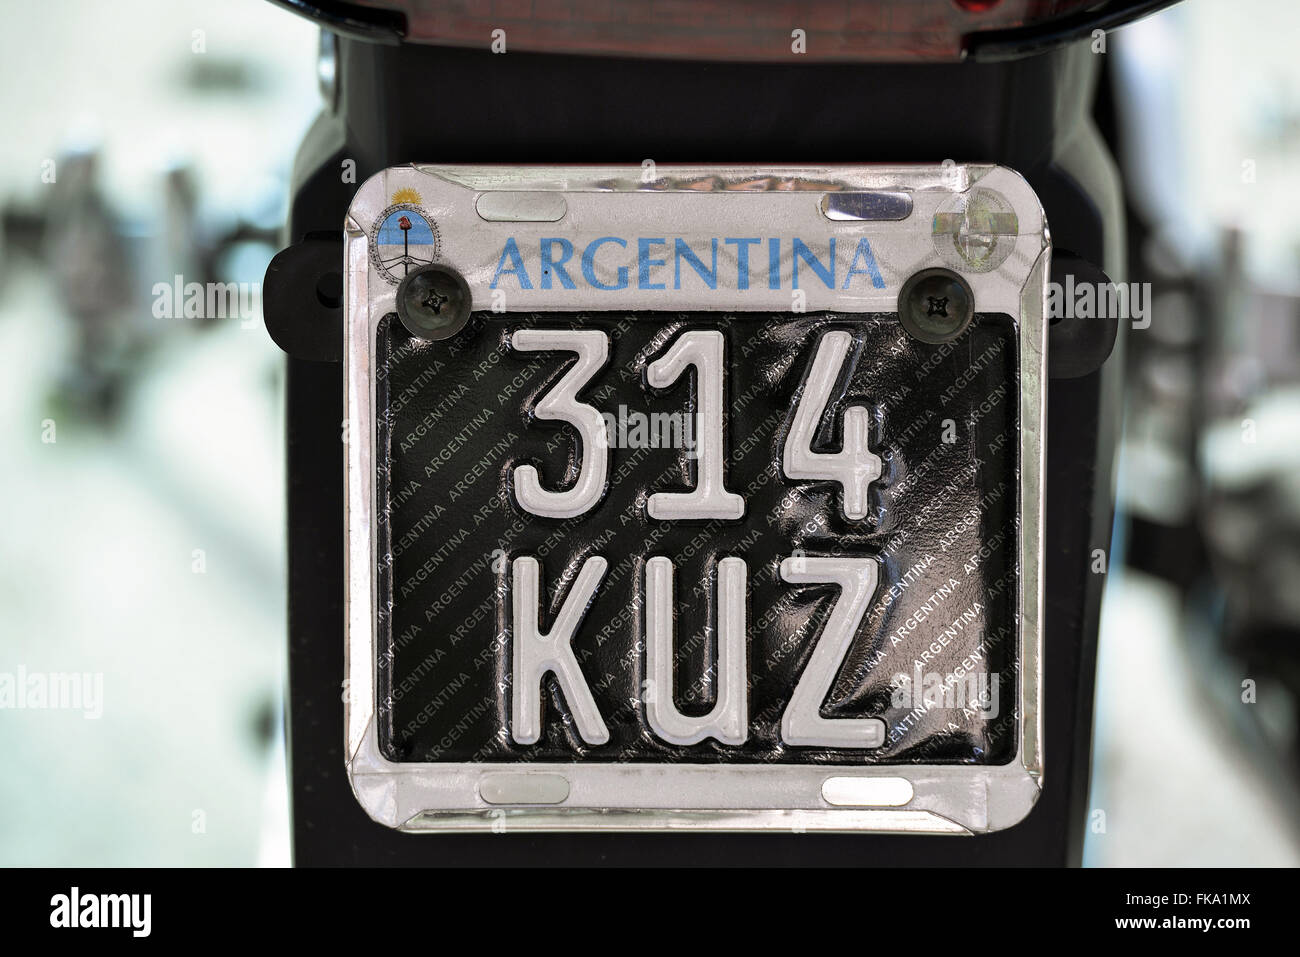 Placa de motocicleta da Argentina Stock Photo